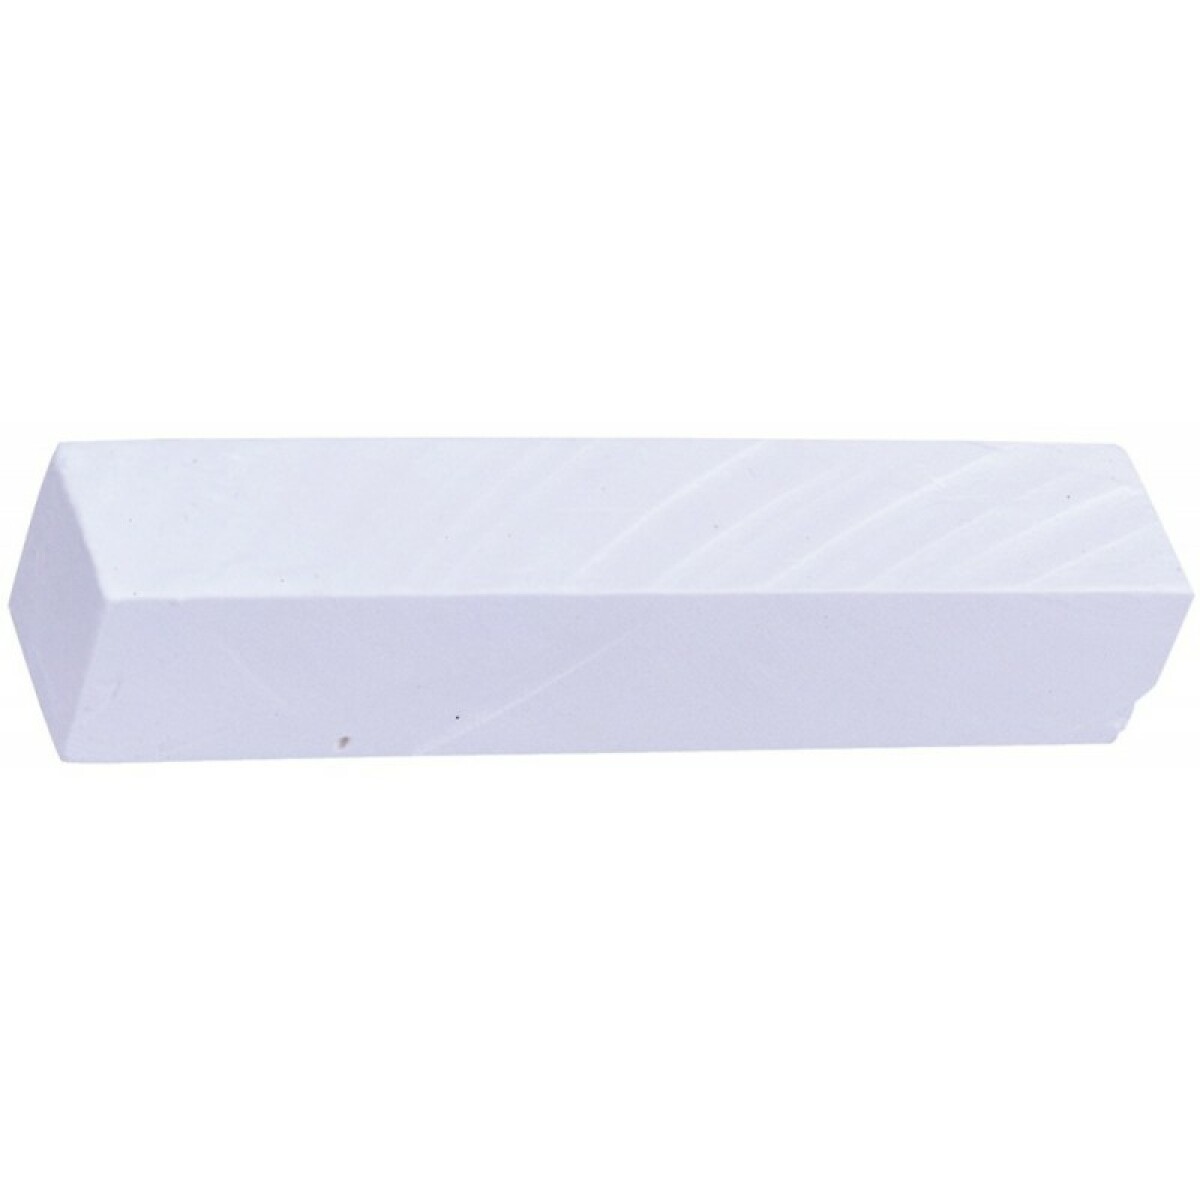 Pointes à tracer, cordeaux, marquage Lyra Bloc de craie 100 St. 491 blanc 30x30x100mm Lyra